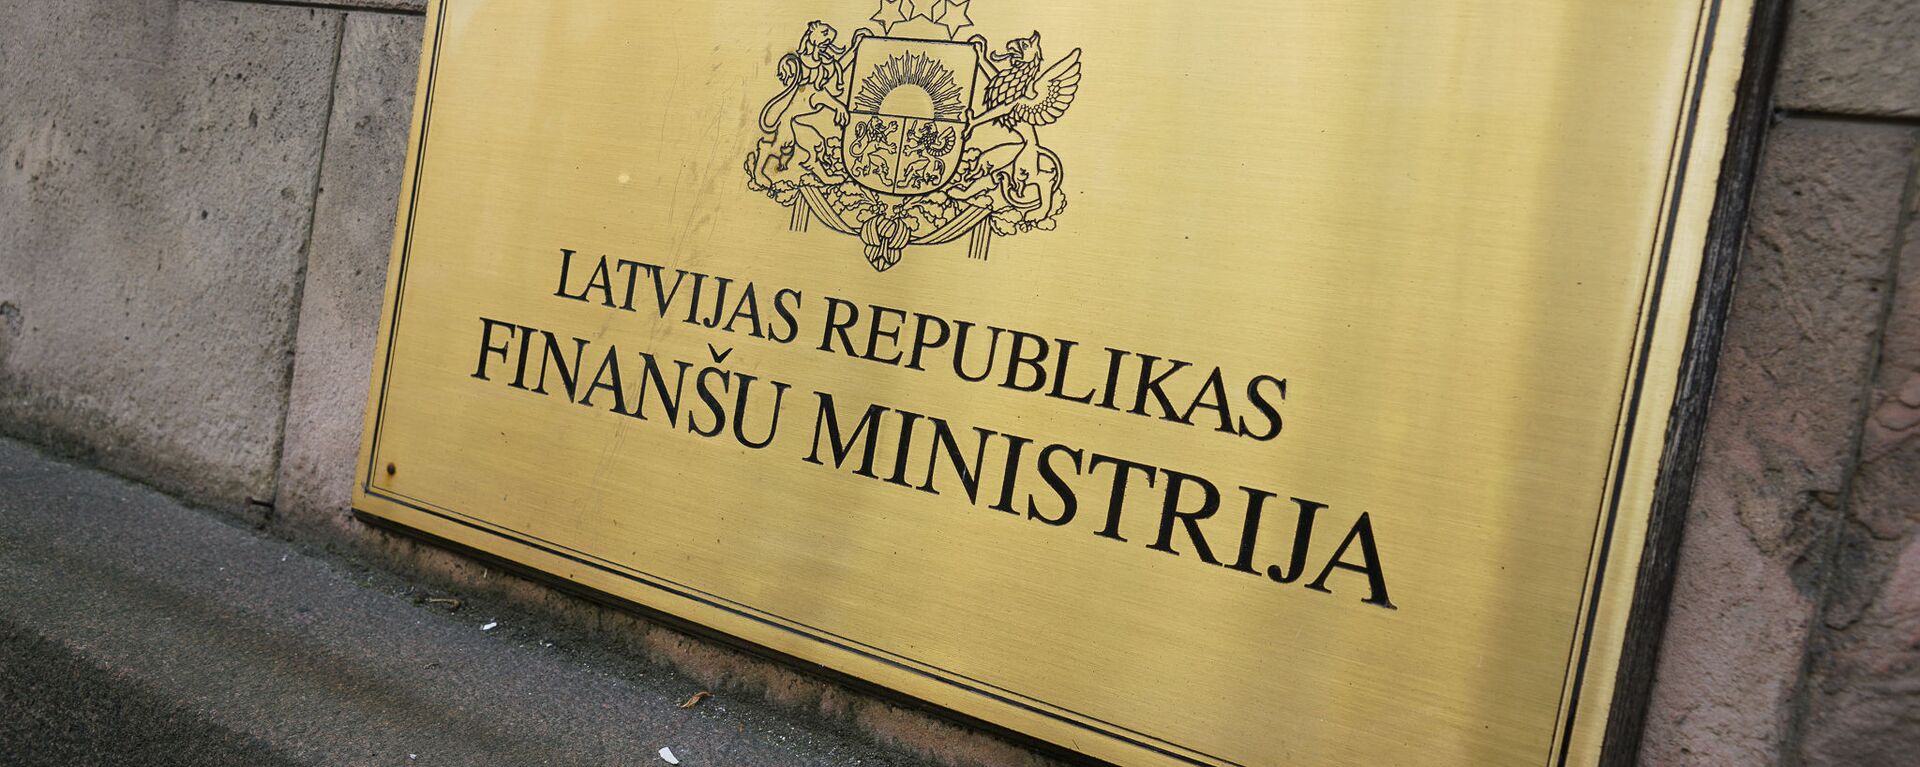 Министерство финансов - Sputnik Латвия, 1920, 07.03.2021